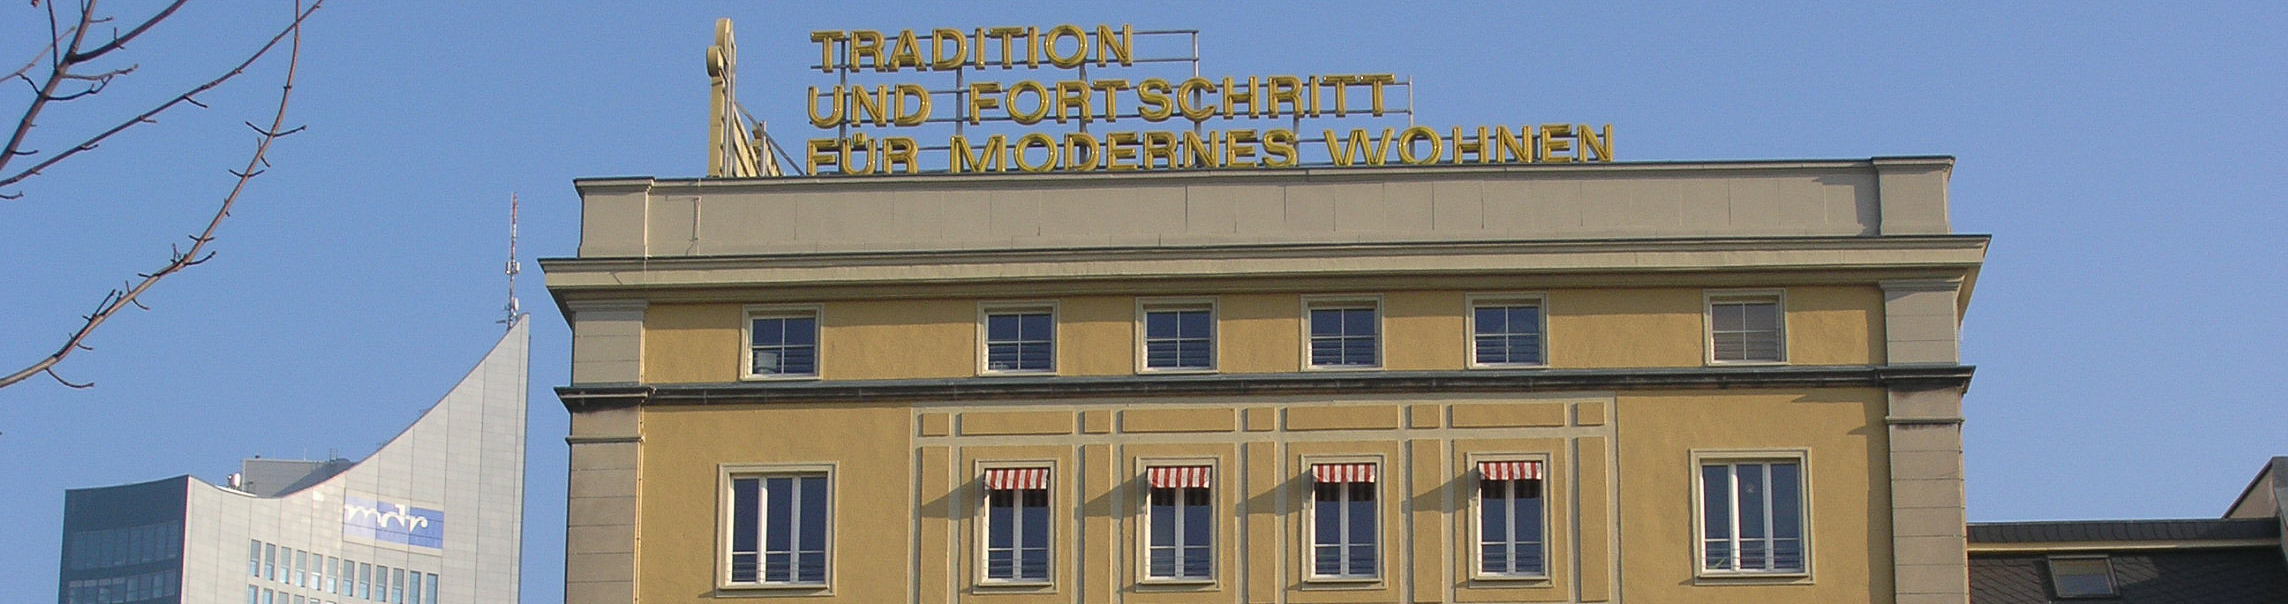 Tradition und Fortschritt - Architekturmix in Leipzig